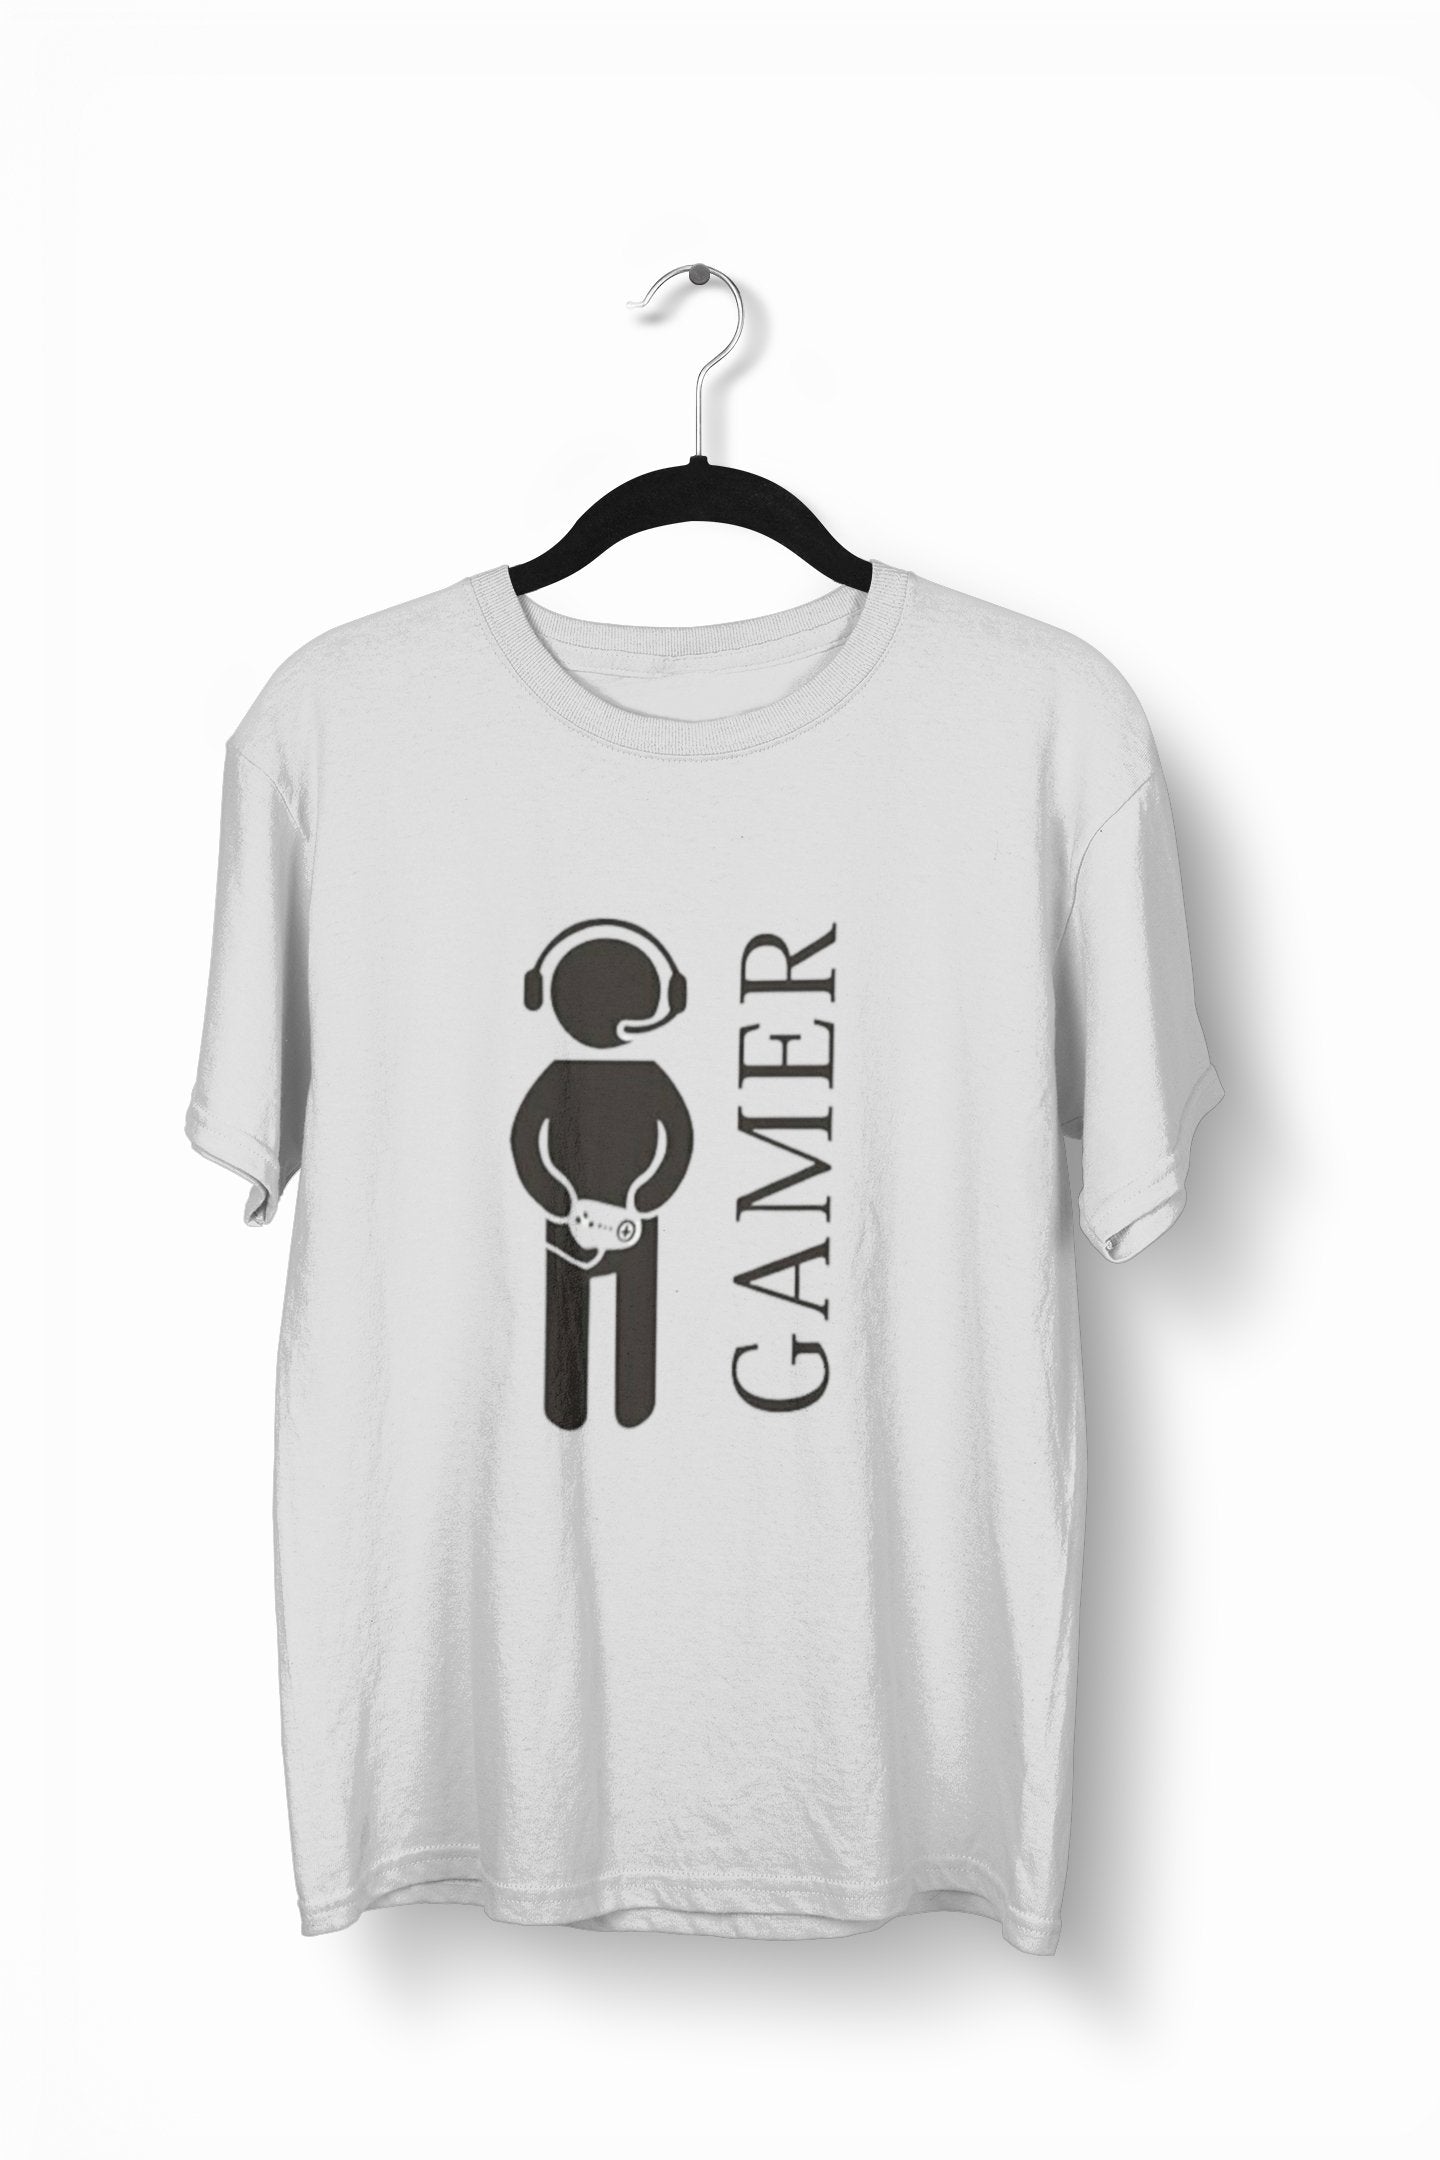 thelegalgang,Gamer T-Shirt for Men,MEN.